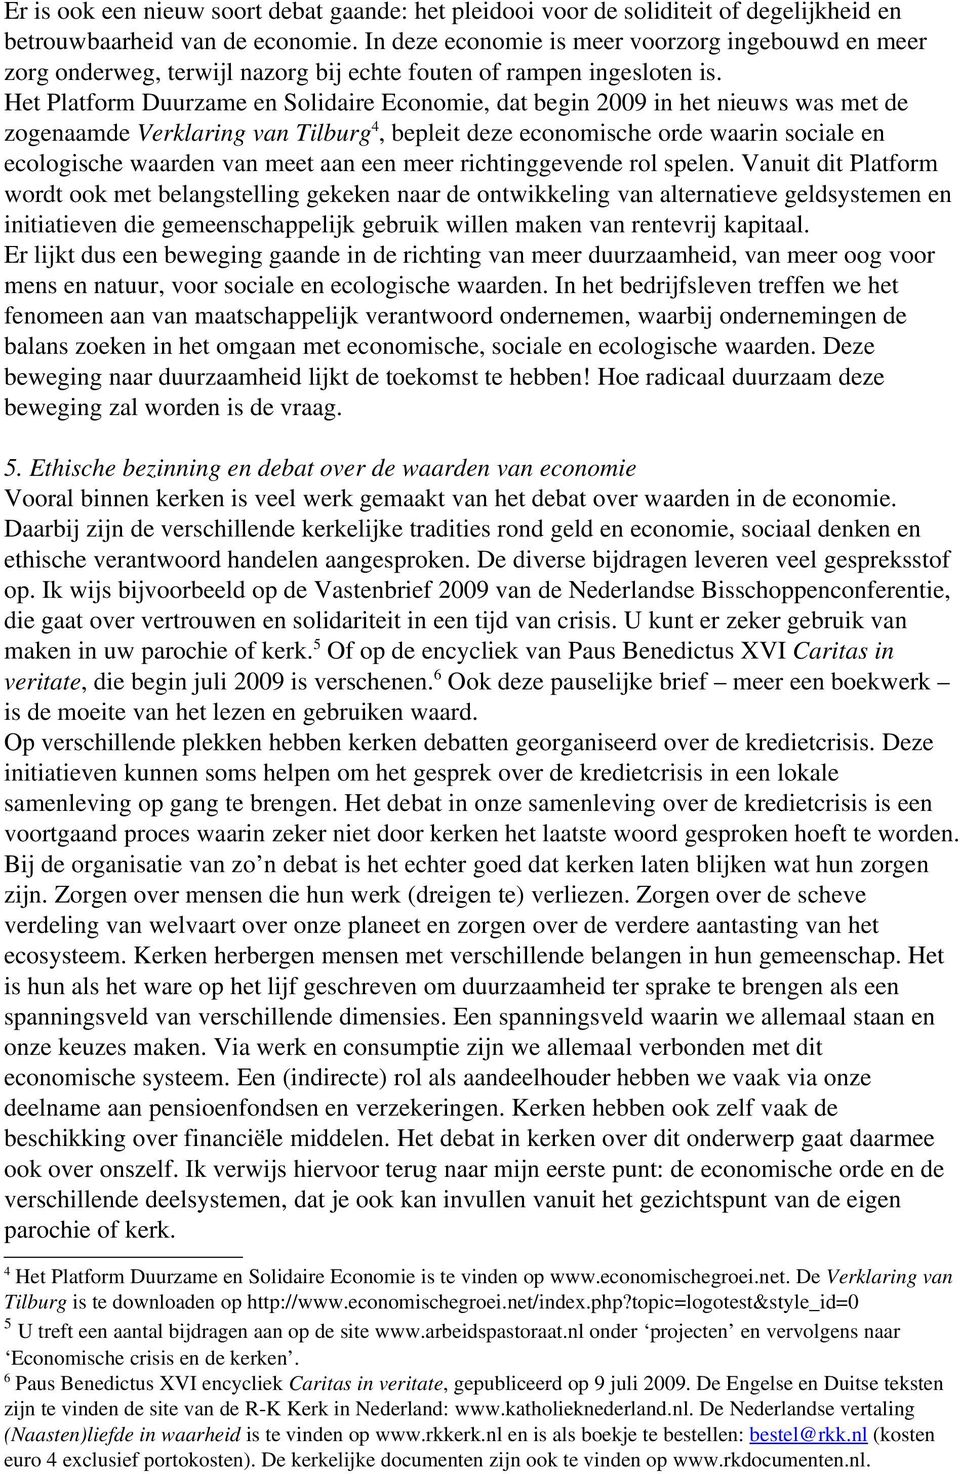 Het Platform Duurzame en Solidaire Economie, dat begin 2009 in het nieuws was met de zogenaamde Verklaring van Tilburg 4, bepleit deze economische orde waarin sociale en ecologische waarden van meet